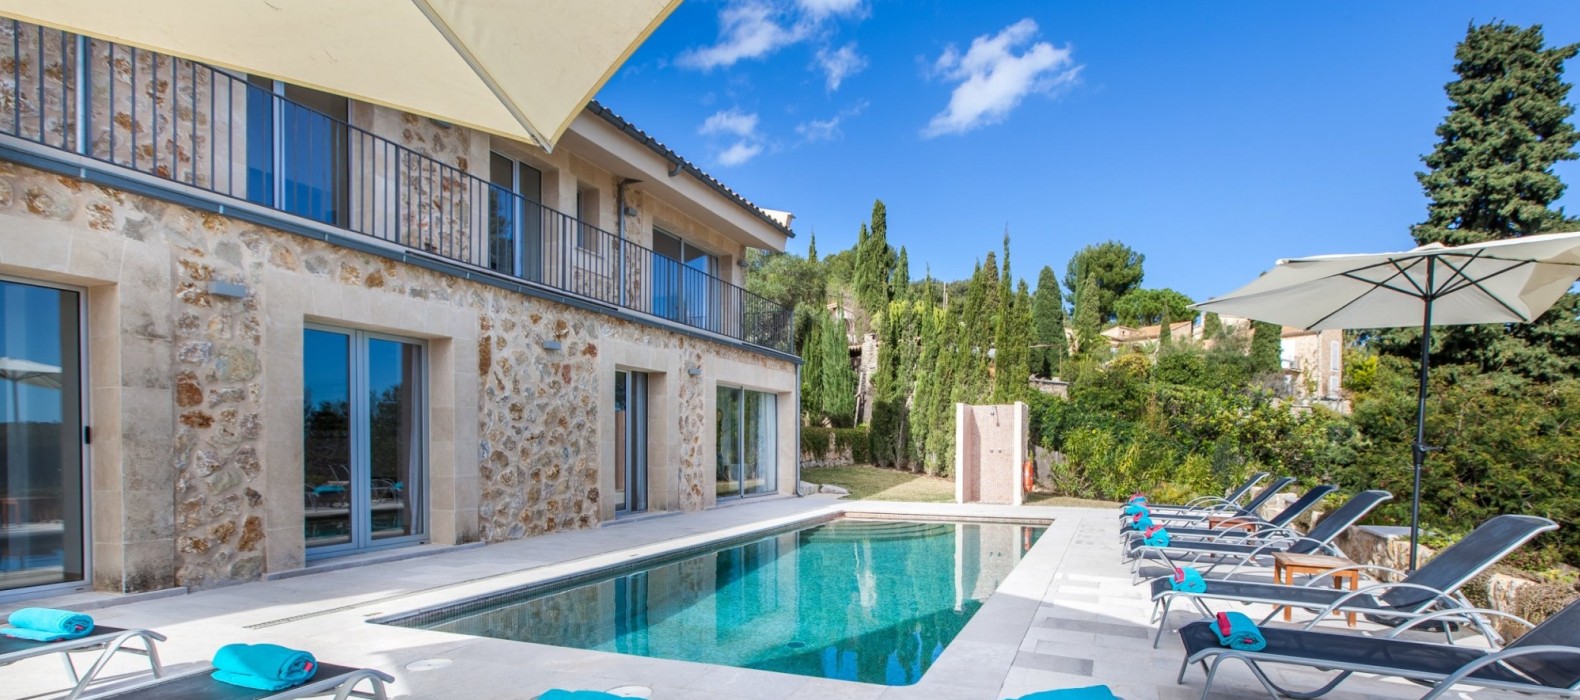 Exterior pool area of Casa Dulce Vista in Mallorca